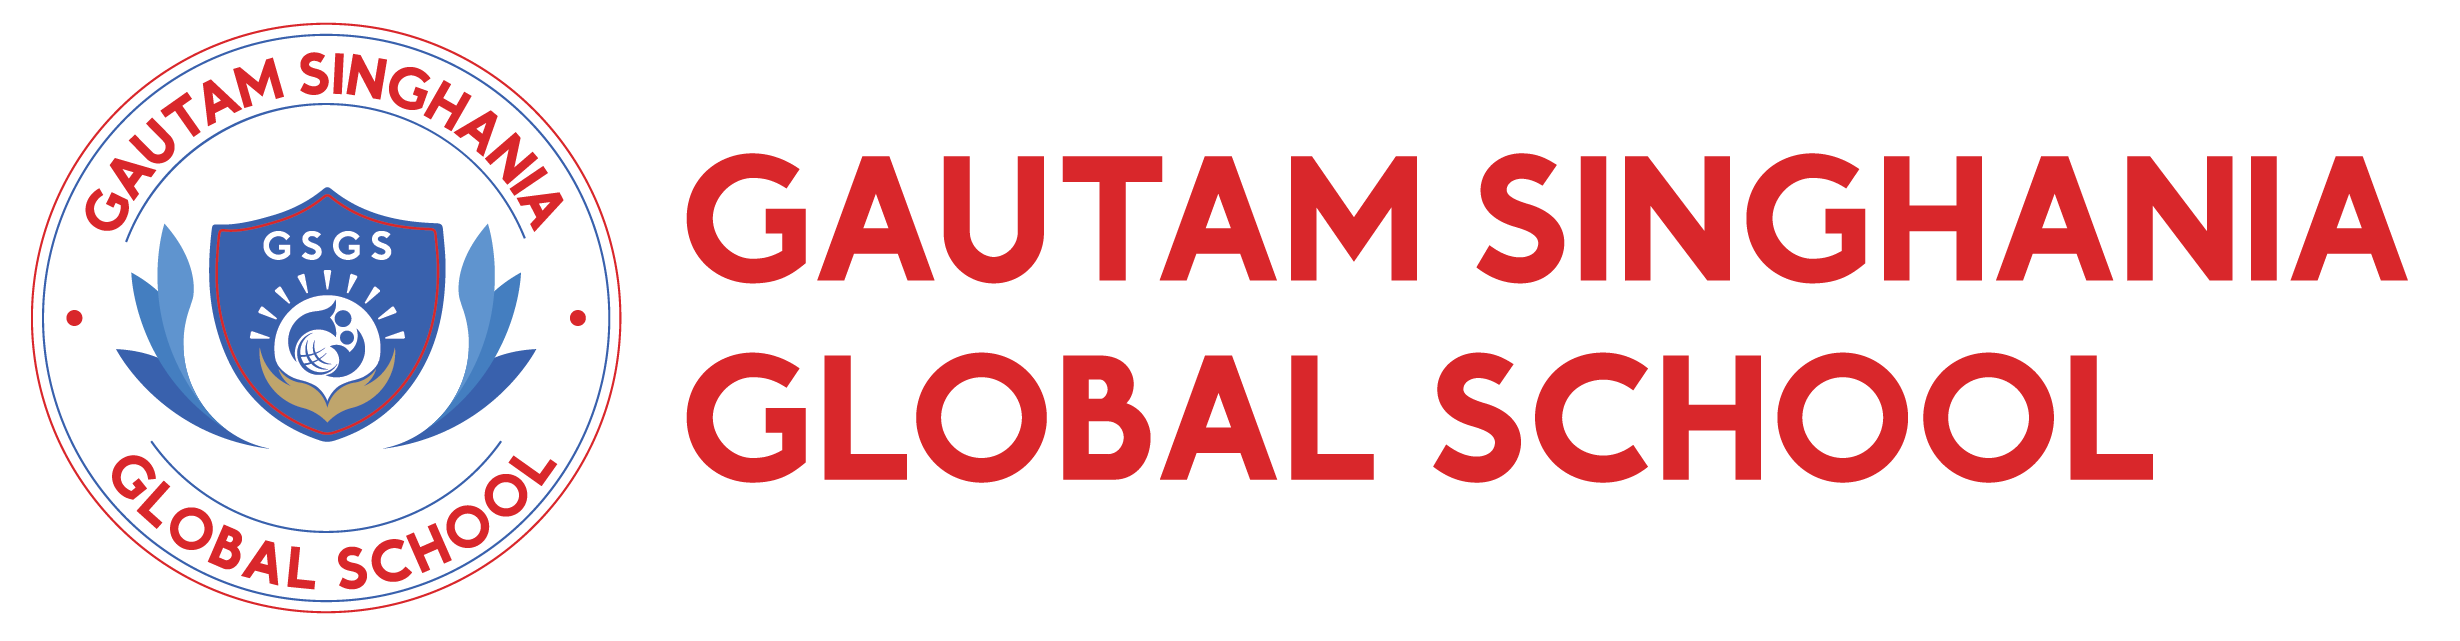 Gautam Singhania Global School